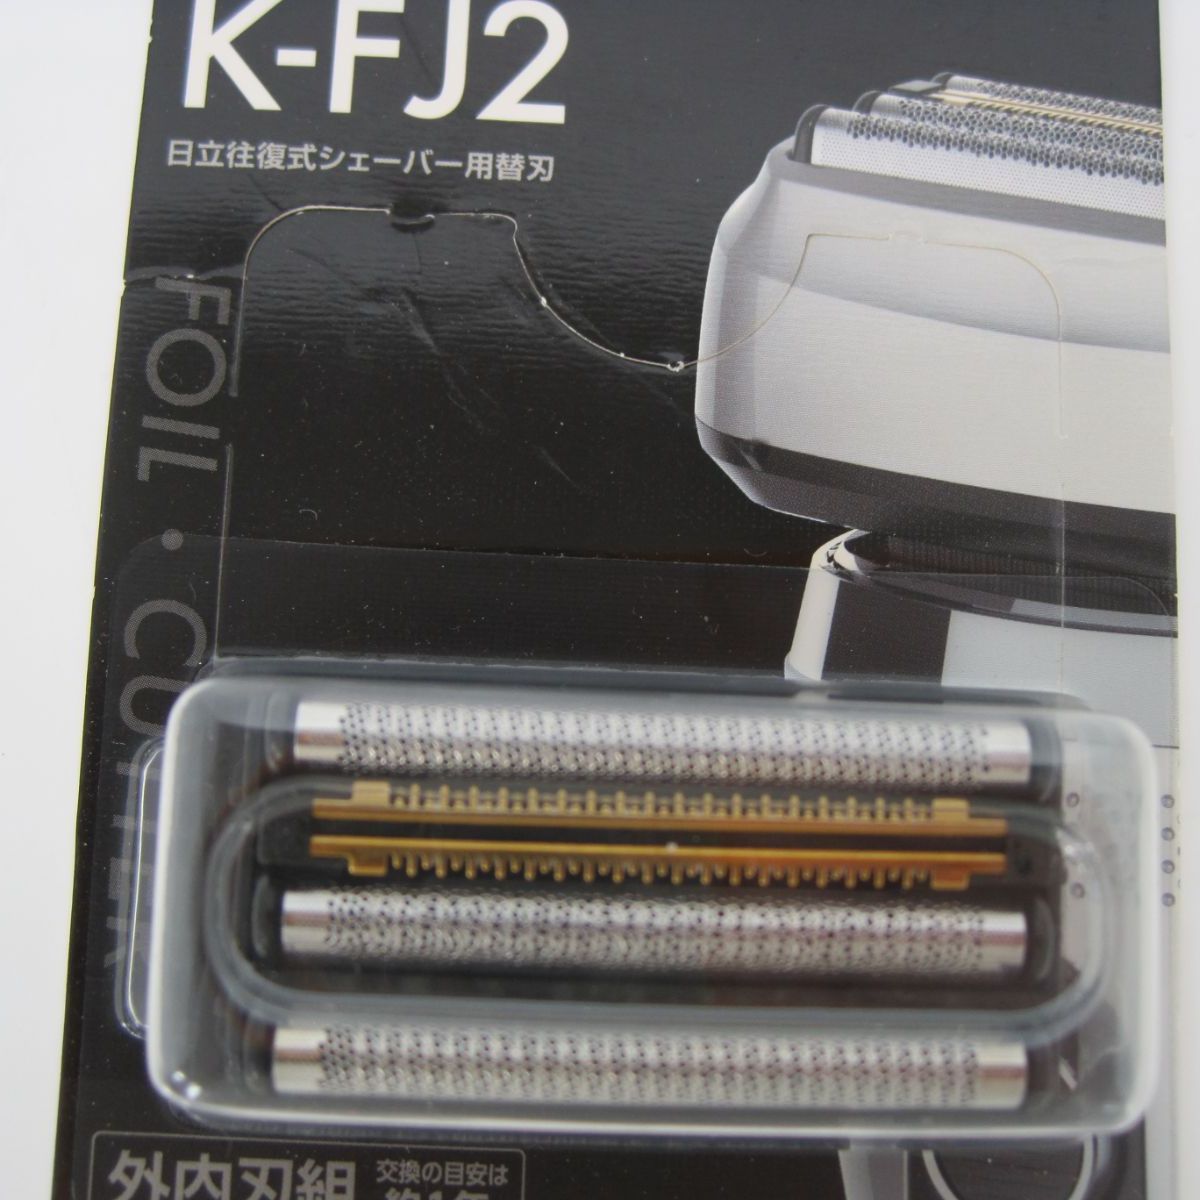 日立 シェーバー 替刃 K-FJ2